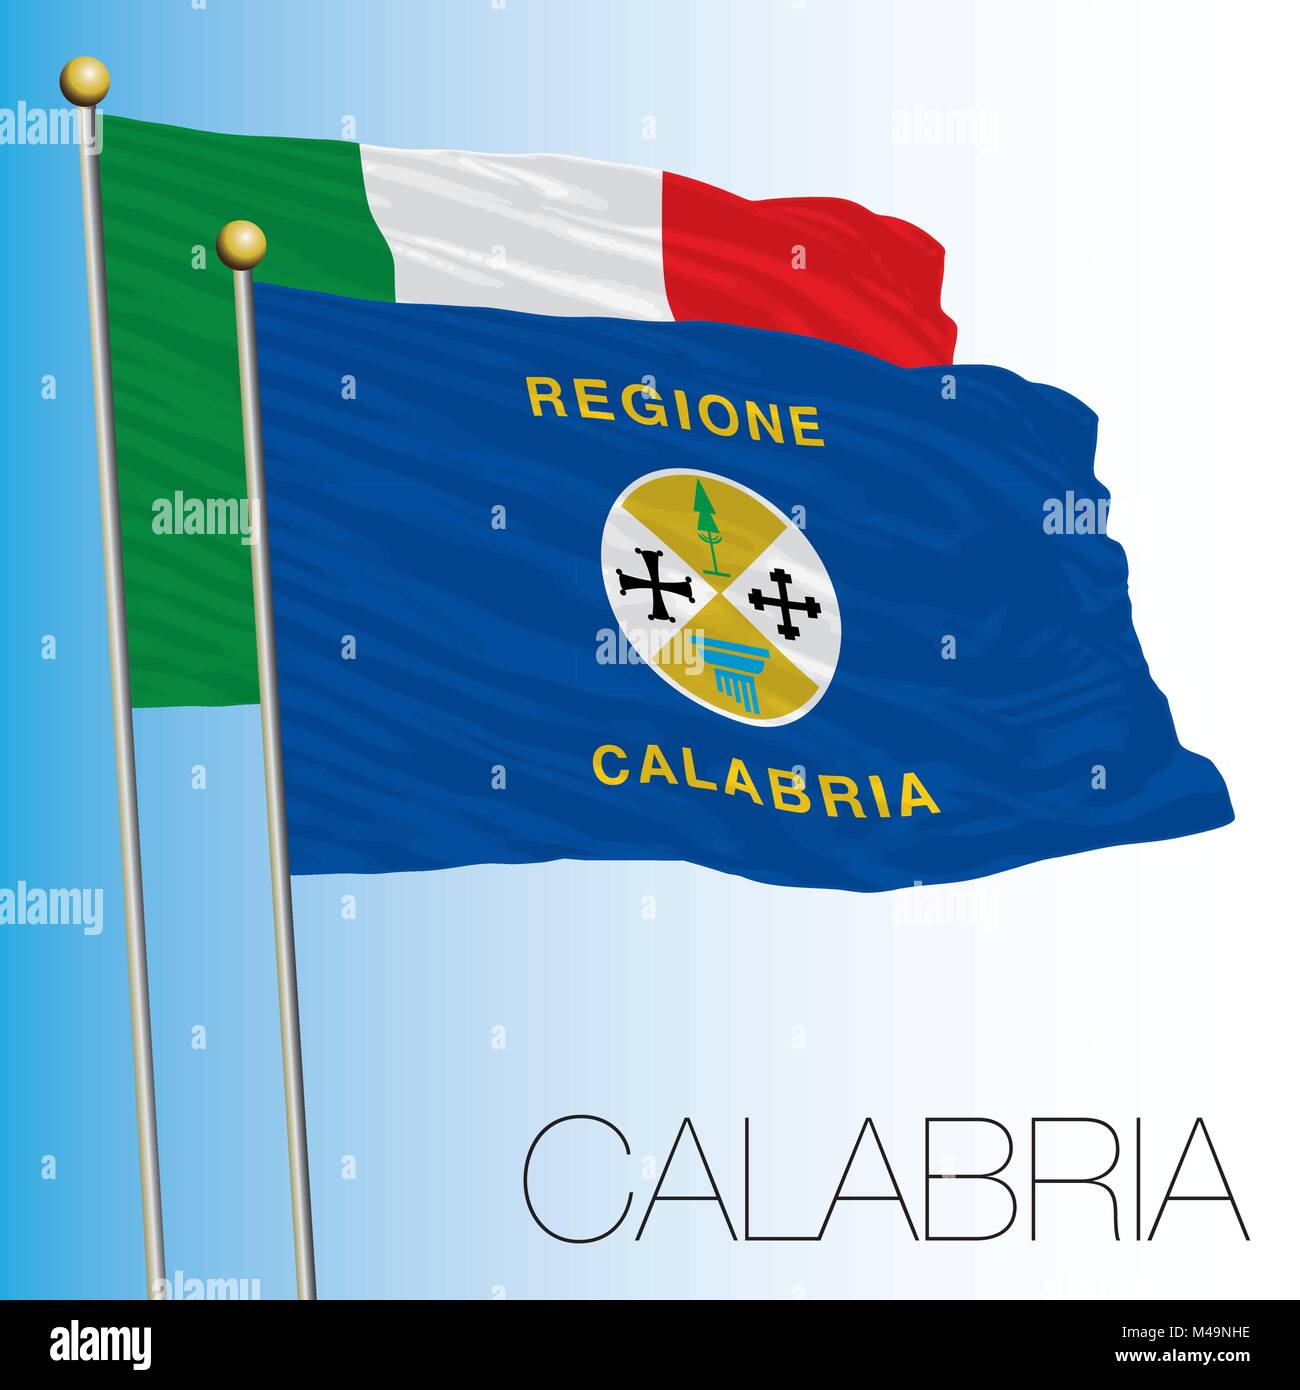 Calabria, drapeau régional, République Italienne, l'Italie, l'Union européenne Illustration de Vecteur